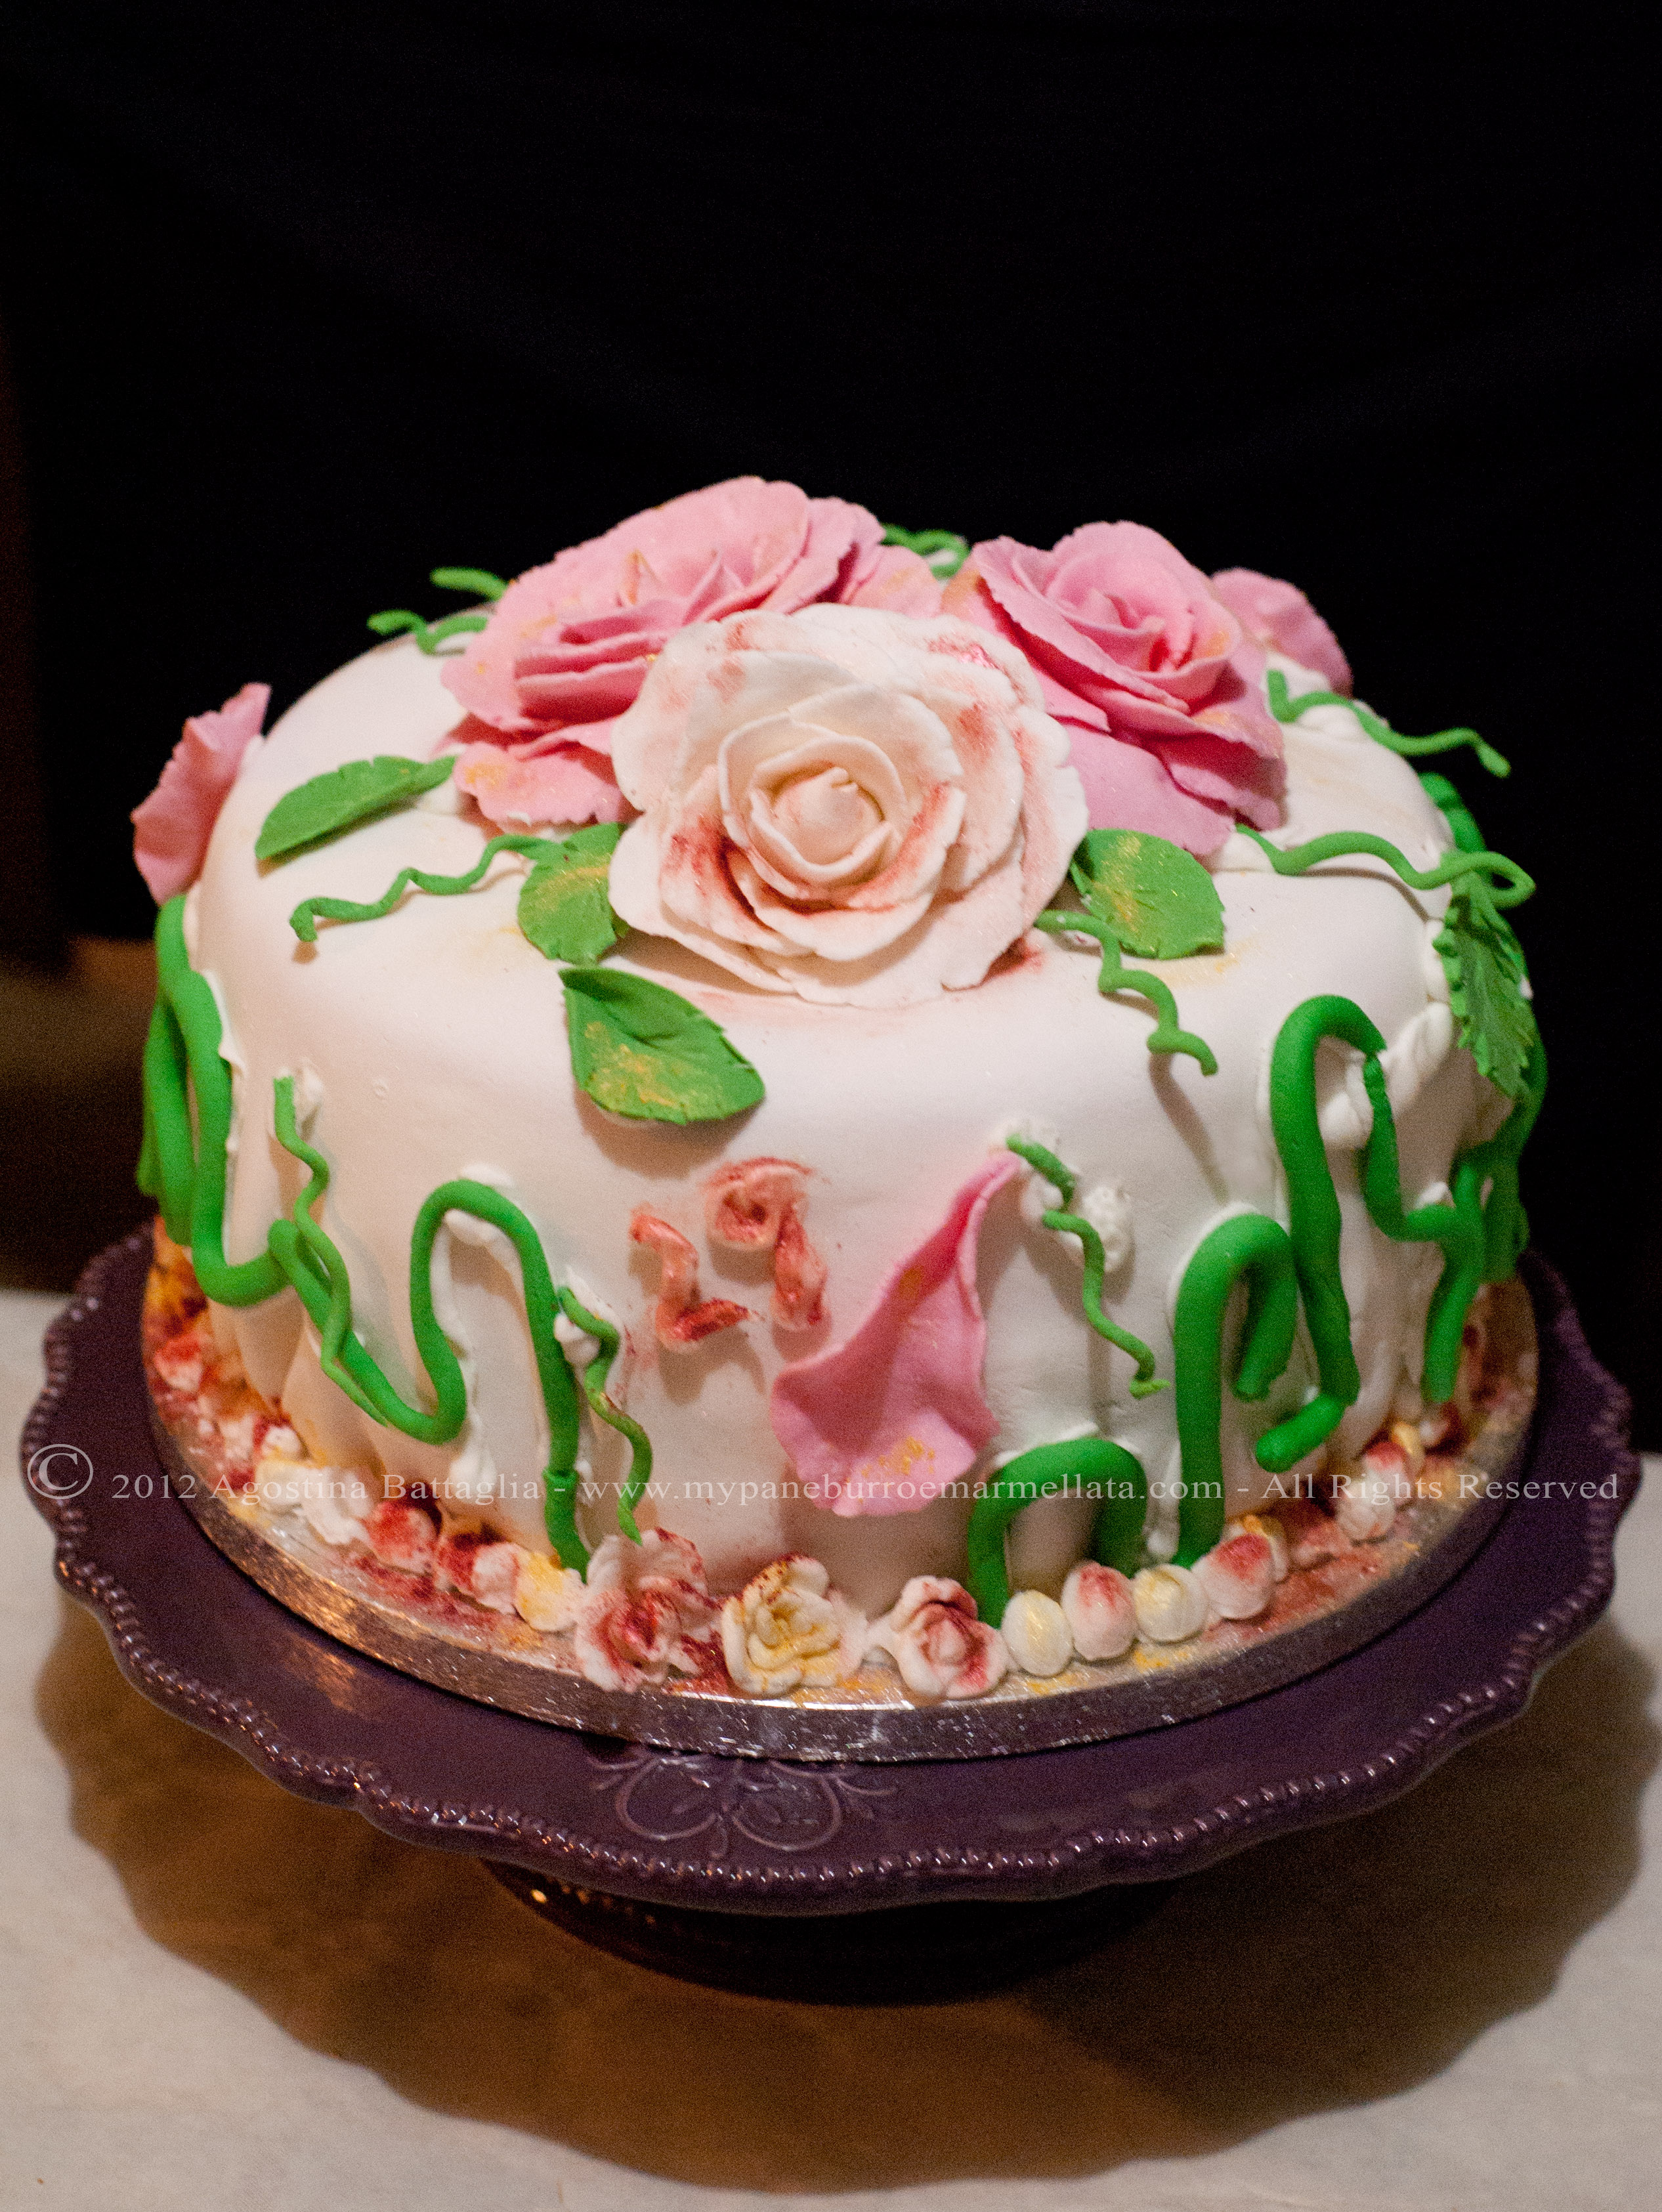 Rose di Pasta di Zucchero + Rainbow Cake = Una Torta delicata dall